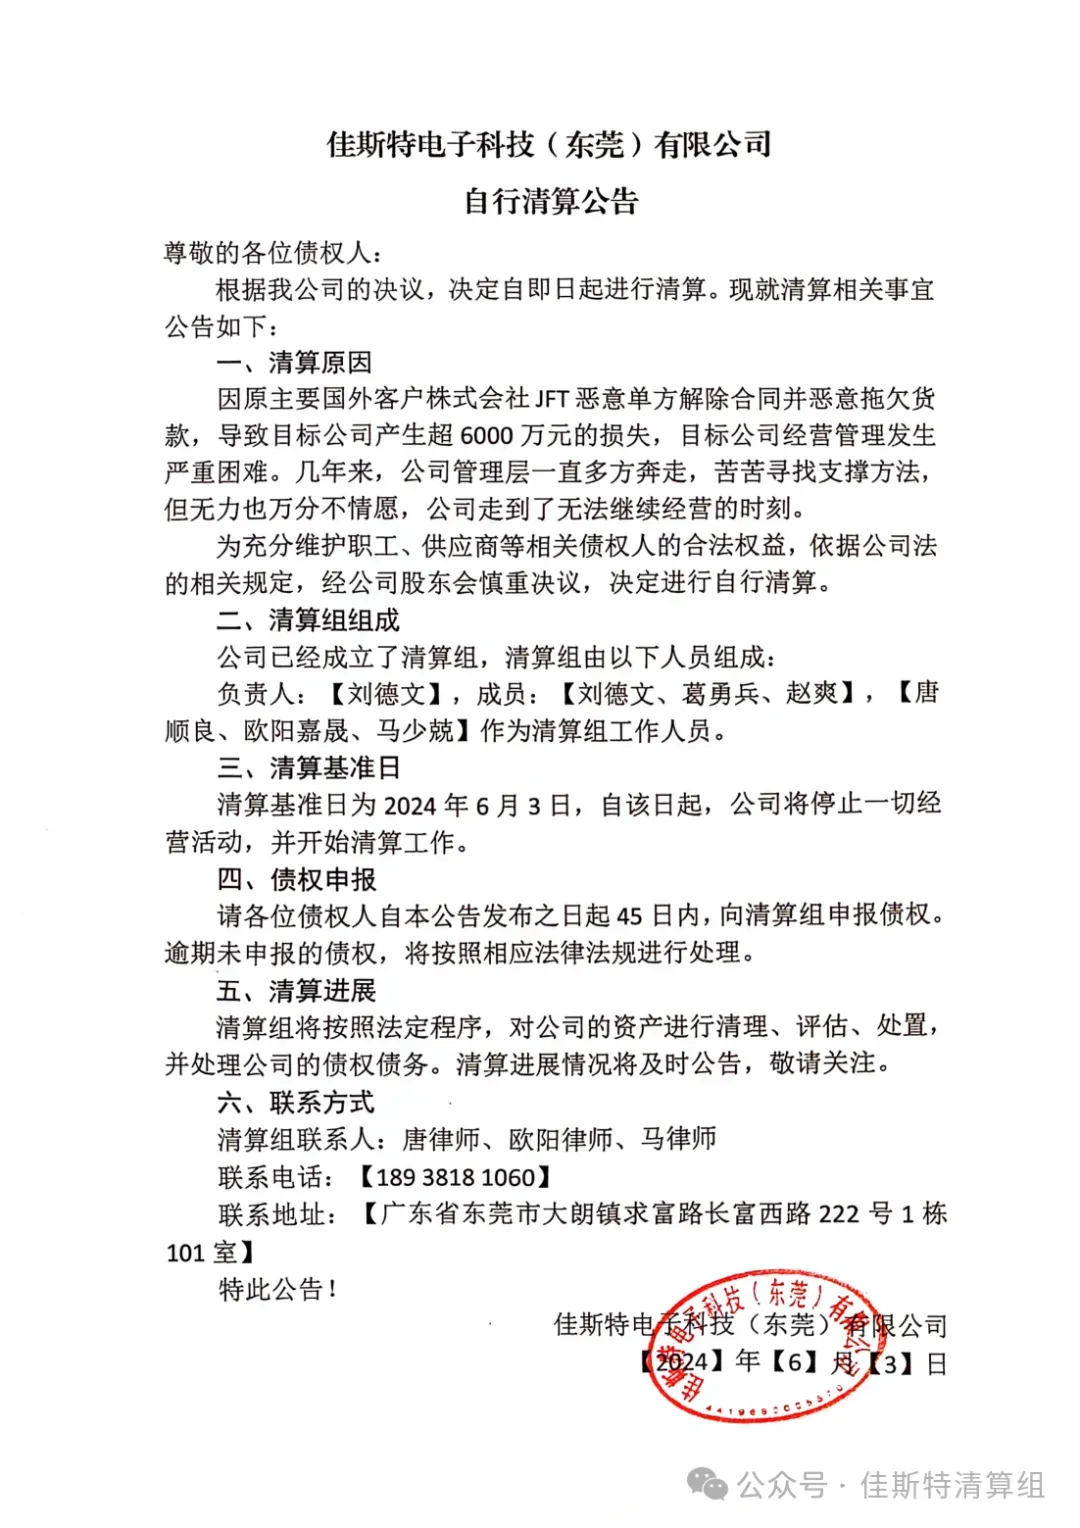 佳斯特电子科技（东莞）有限公司发布自行清算公告